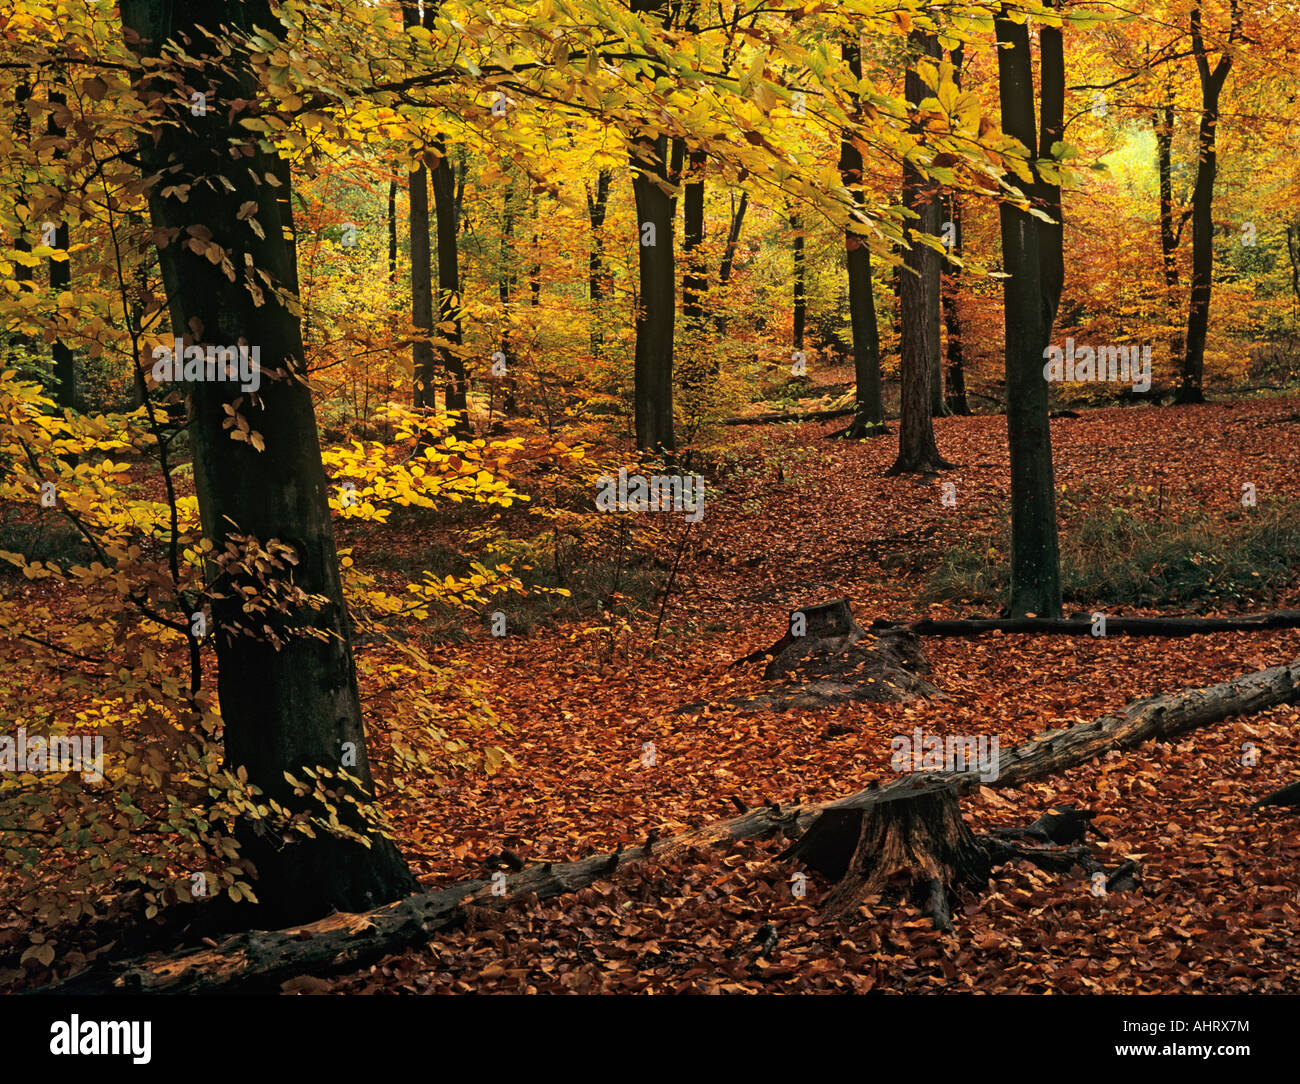 Native Buche Fagus sylvatica Bäume mit Herbstlaub im November bei Alice holt Forest Park Wald. Bentley Hampshire England Großbritannien Großbritannien Stockfoto